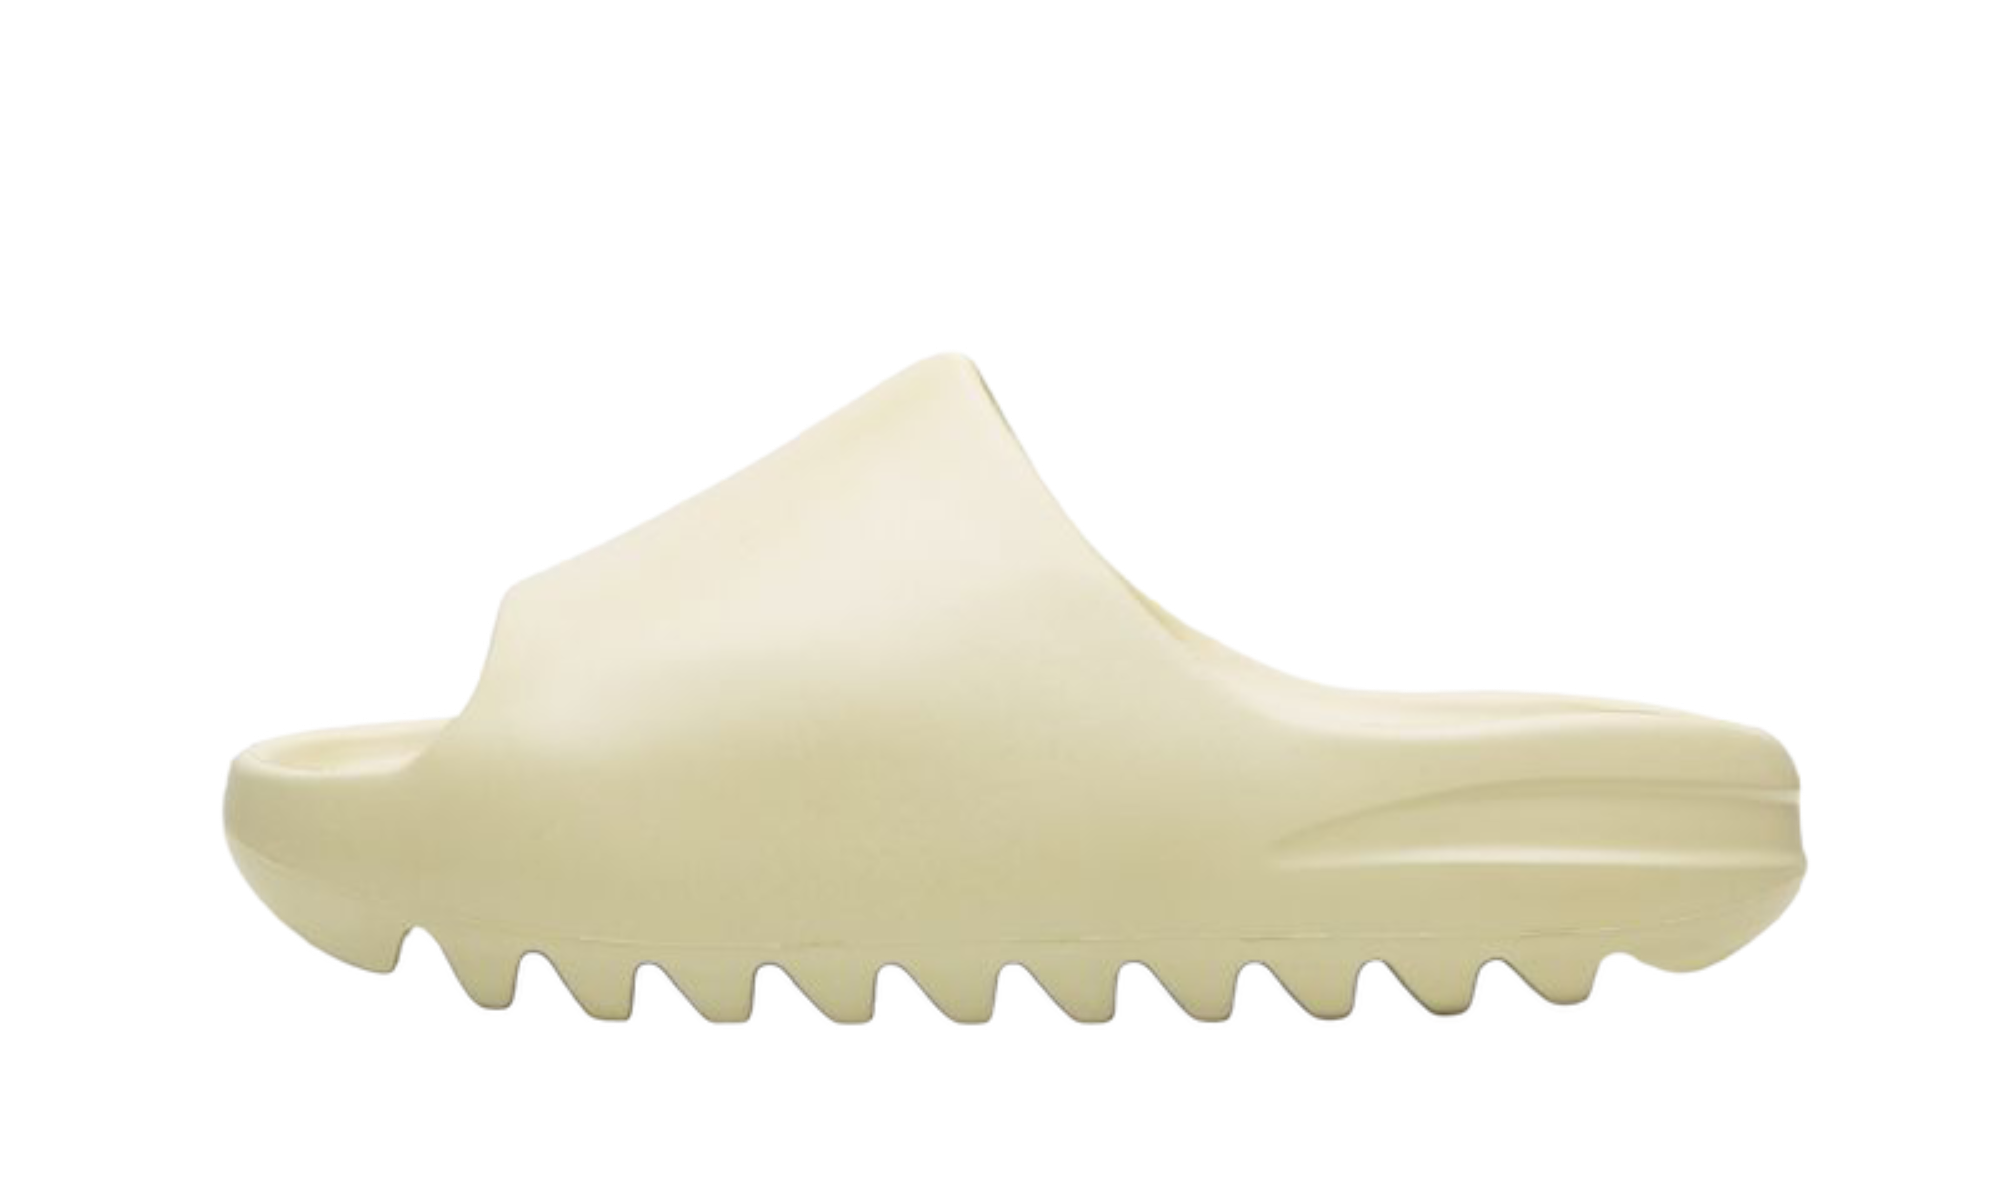 Adidas Yeezy Slide "Bone" (2022)